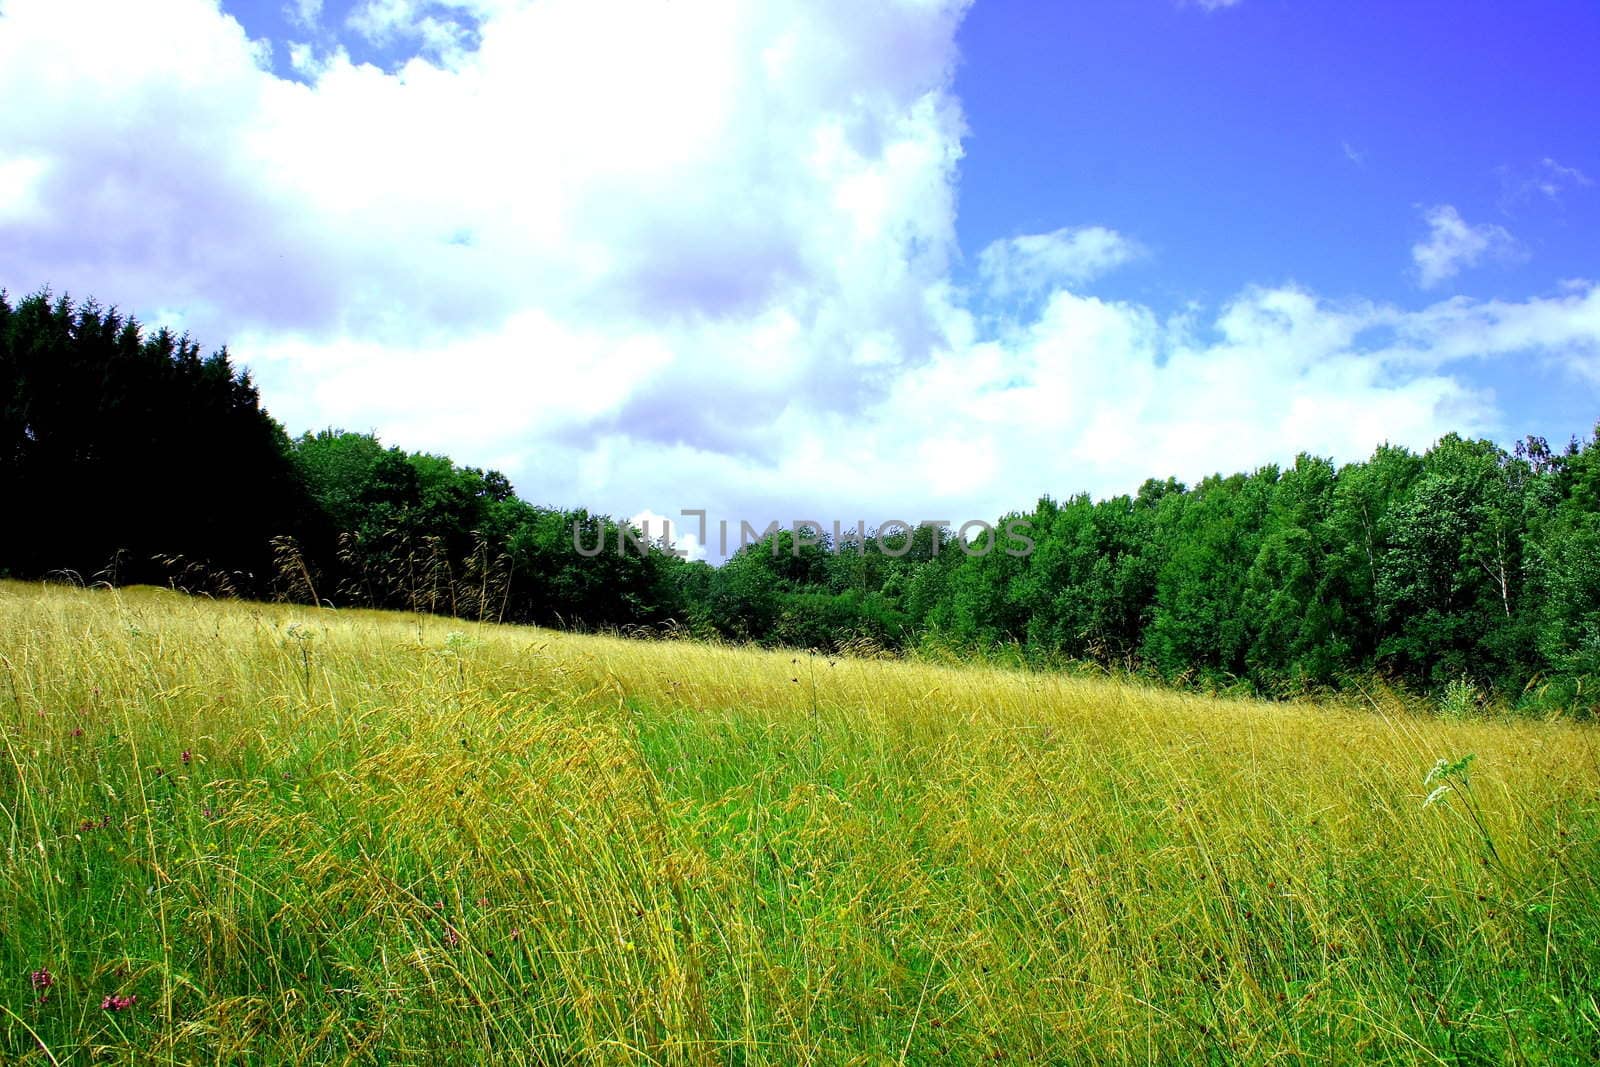 sommerliche Waldwiese mit blauem himmel und weißen Wolken	
summer meadow with blue sky and white clouds